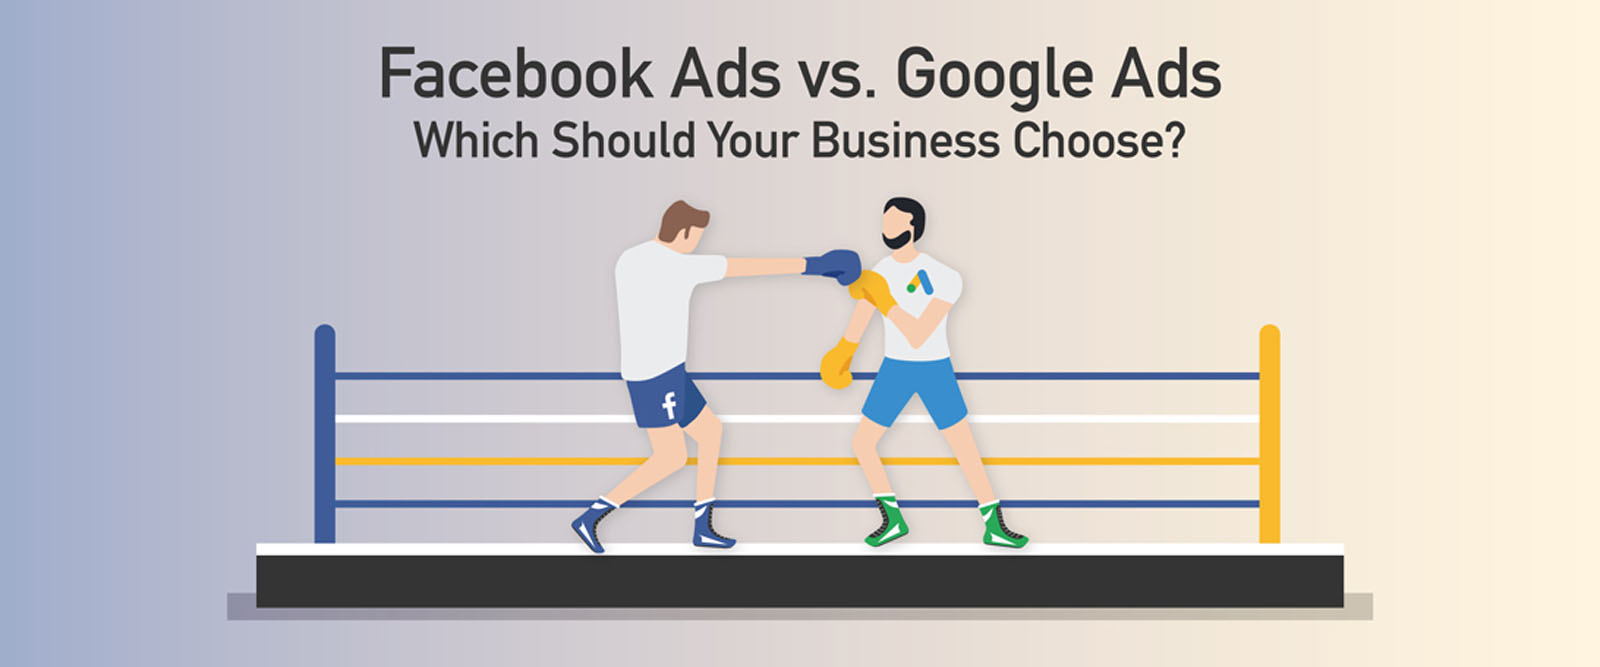 Quảng cáo Google Adwords hay Facebook Ads, sự lựa chọn khôn ngoan?